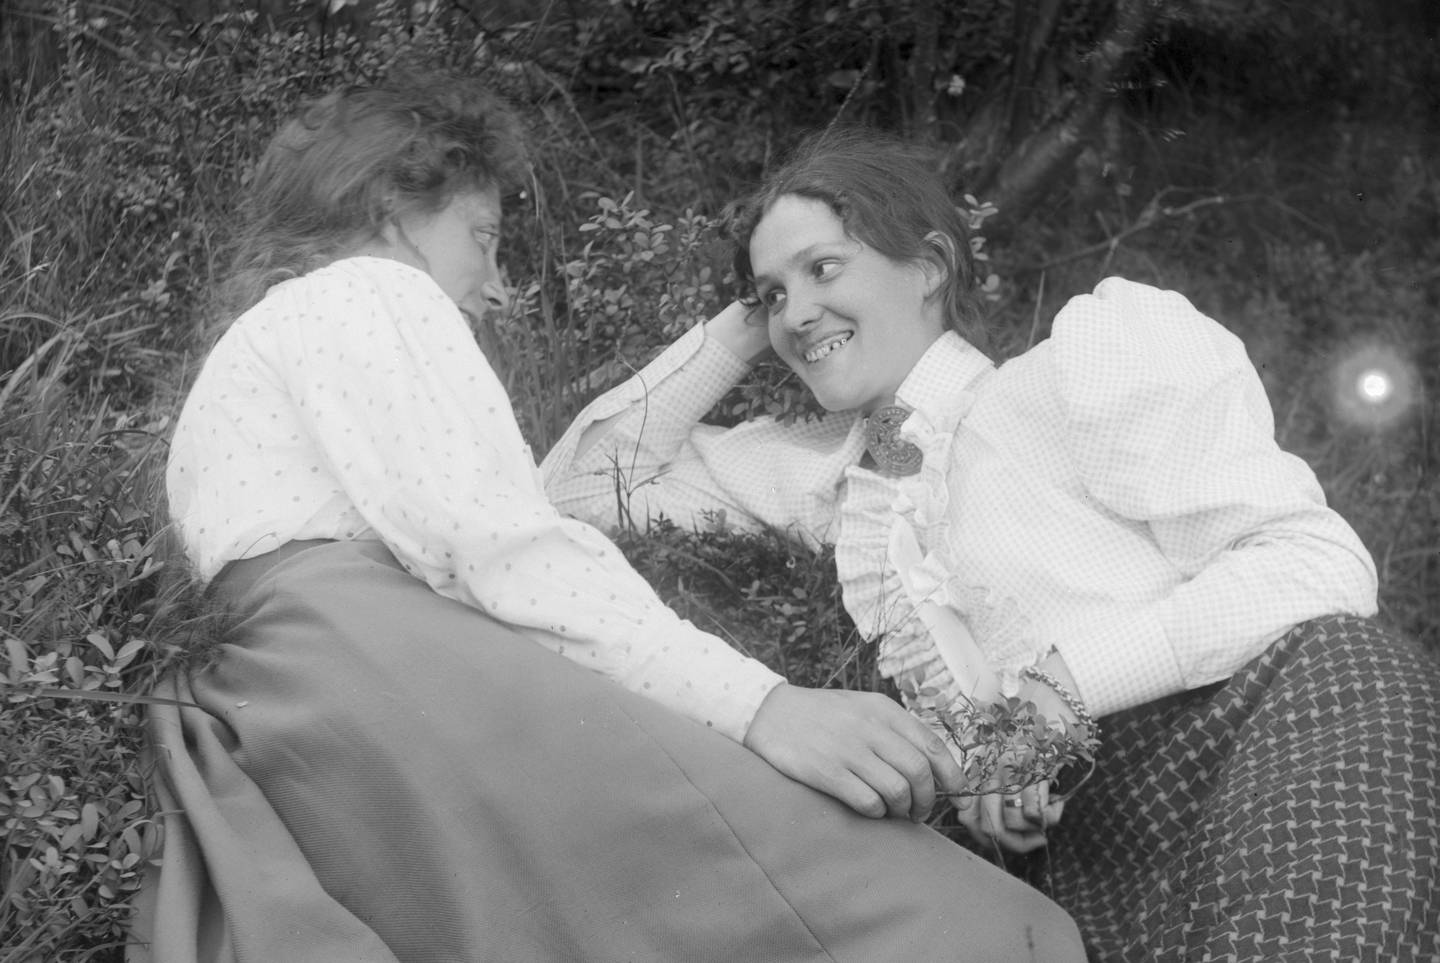 Fra venstre Rachel Johnsen, Hannchen Jacobsen. Fotografiet er hentet fra arkivet etter Hannchen Jacobsen og Rachel Johnsen, som drev fotoforretning og -atelier sammen fra 1904 til1908.